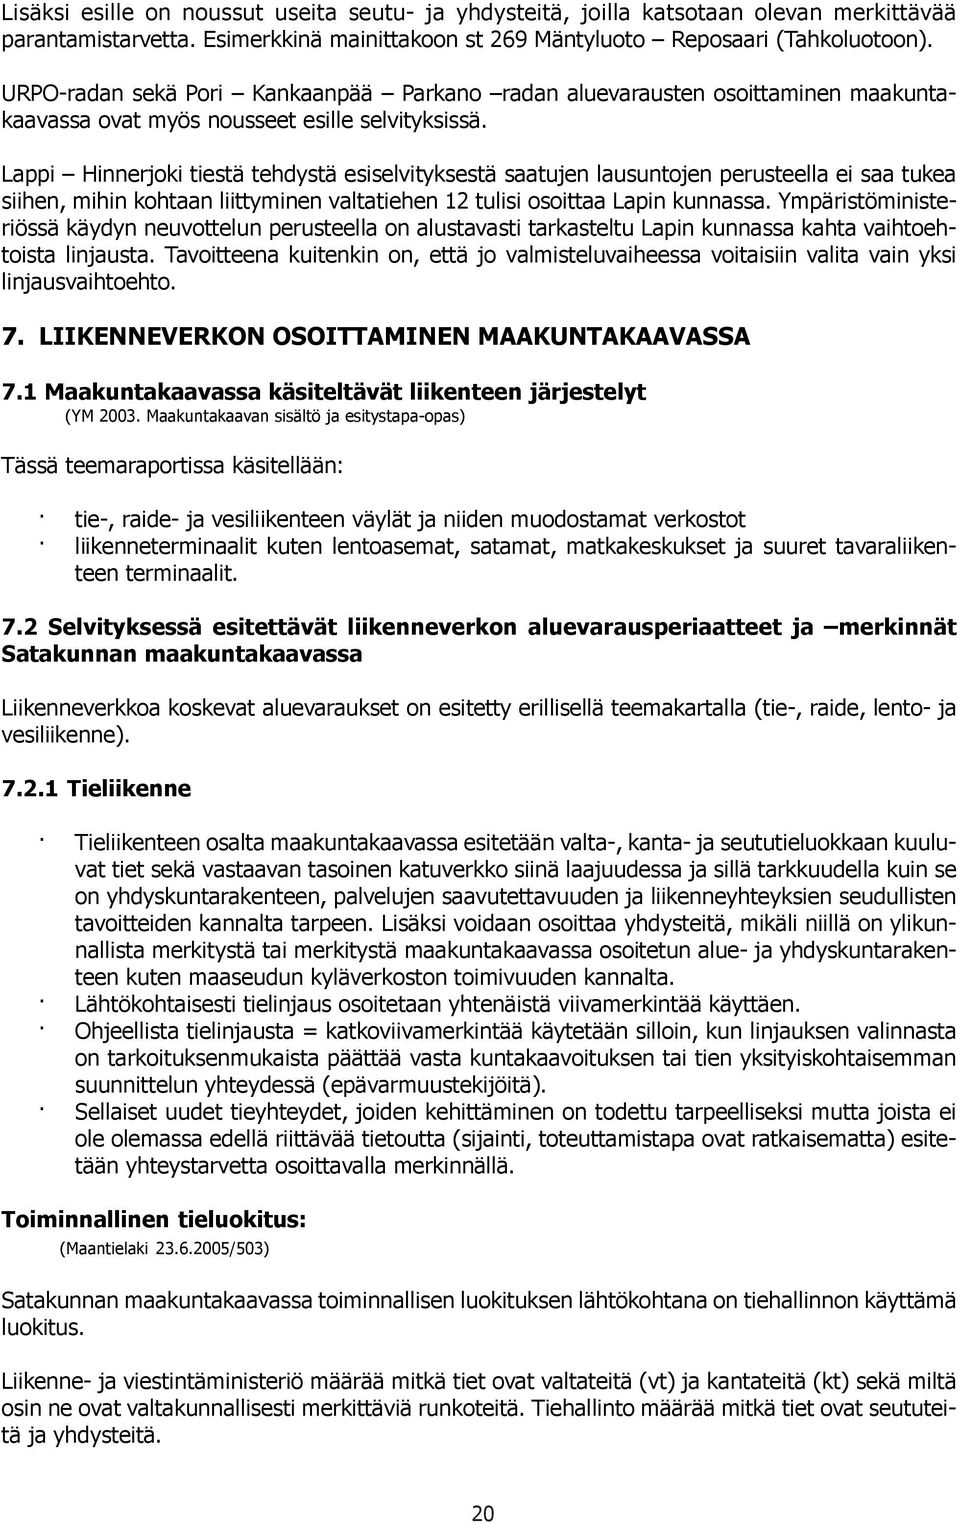 Lappi Hinnerjoki tieä tehdyä esiselvitykseä saatujen lausuntojen perueella ei saa tukea siihen, mihin kohtaan liittyminen valtatiehen 12 tulisi osoittaa Lapin kunnassa.